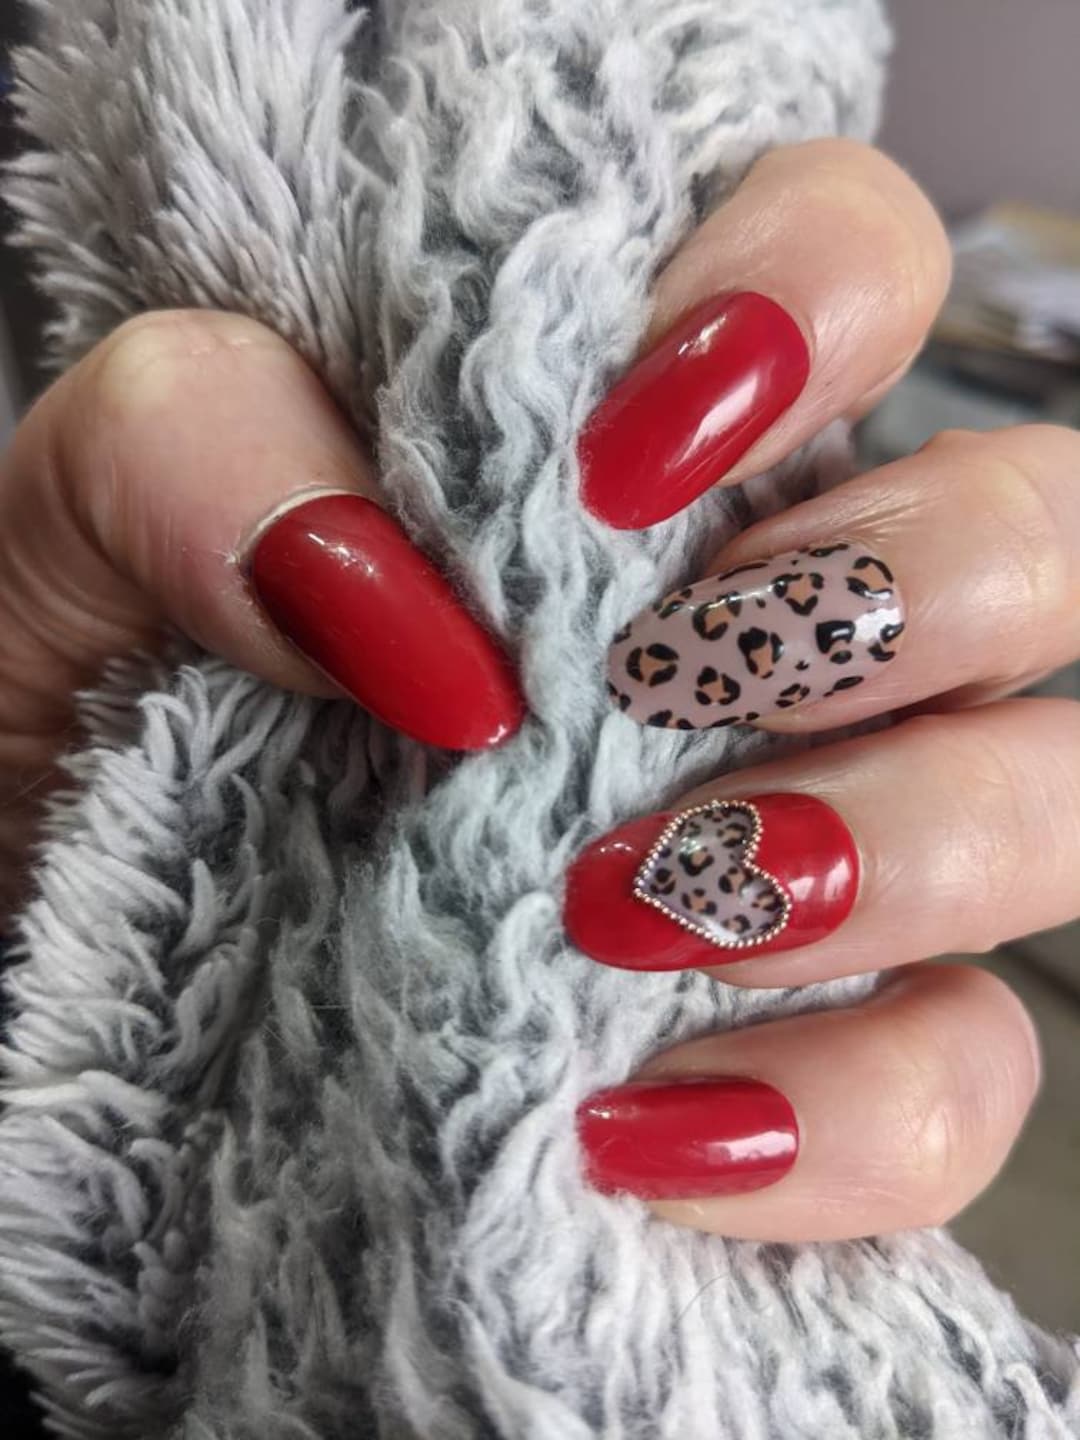 Nails By Anna - Red leopard print design😍🥵 #nails #nailart #nail